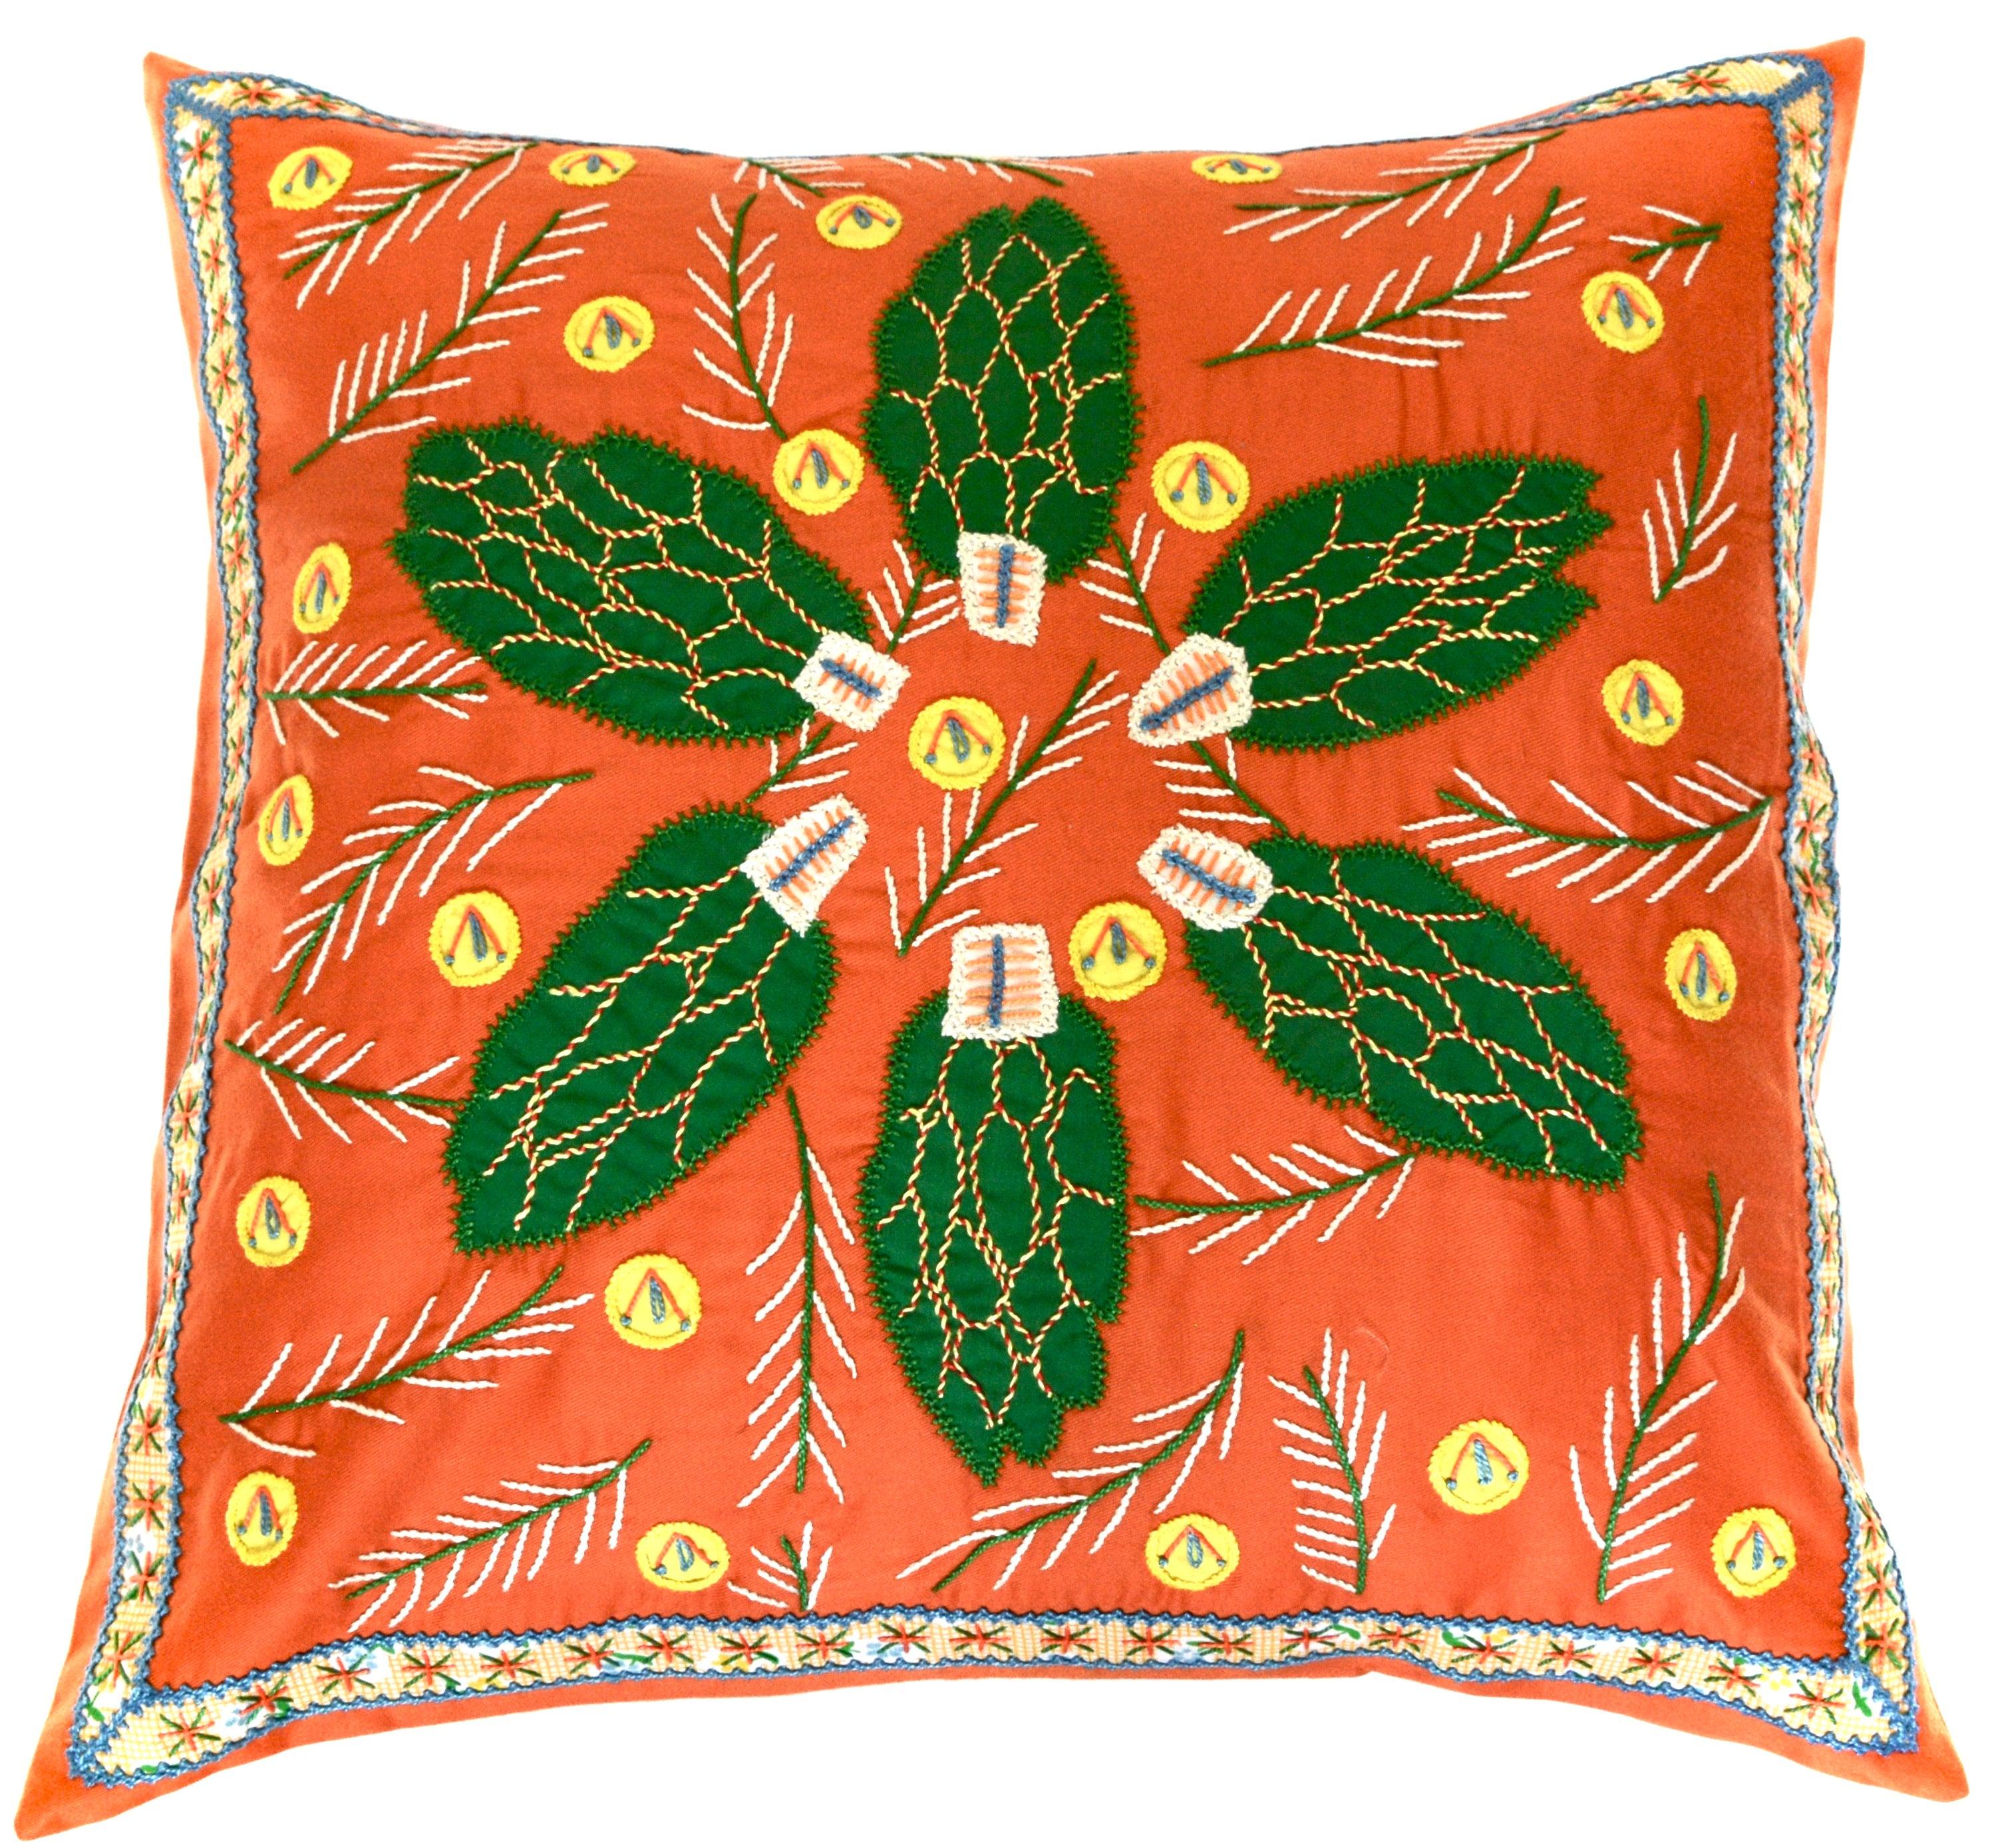 Uvas Design Embroidered Pillow on orange Honduras Threads